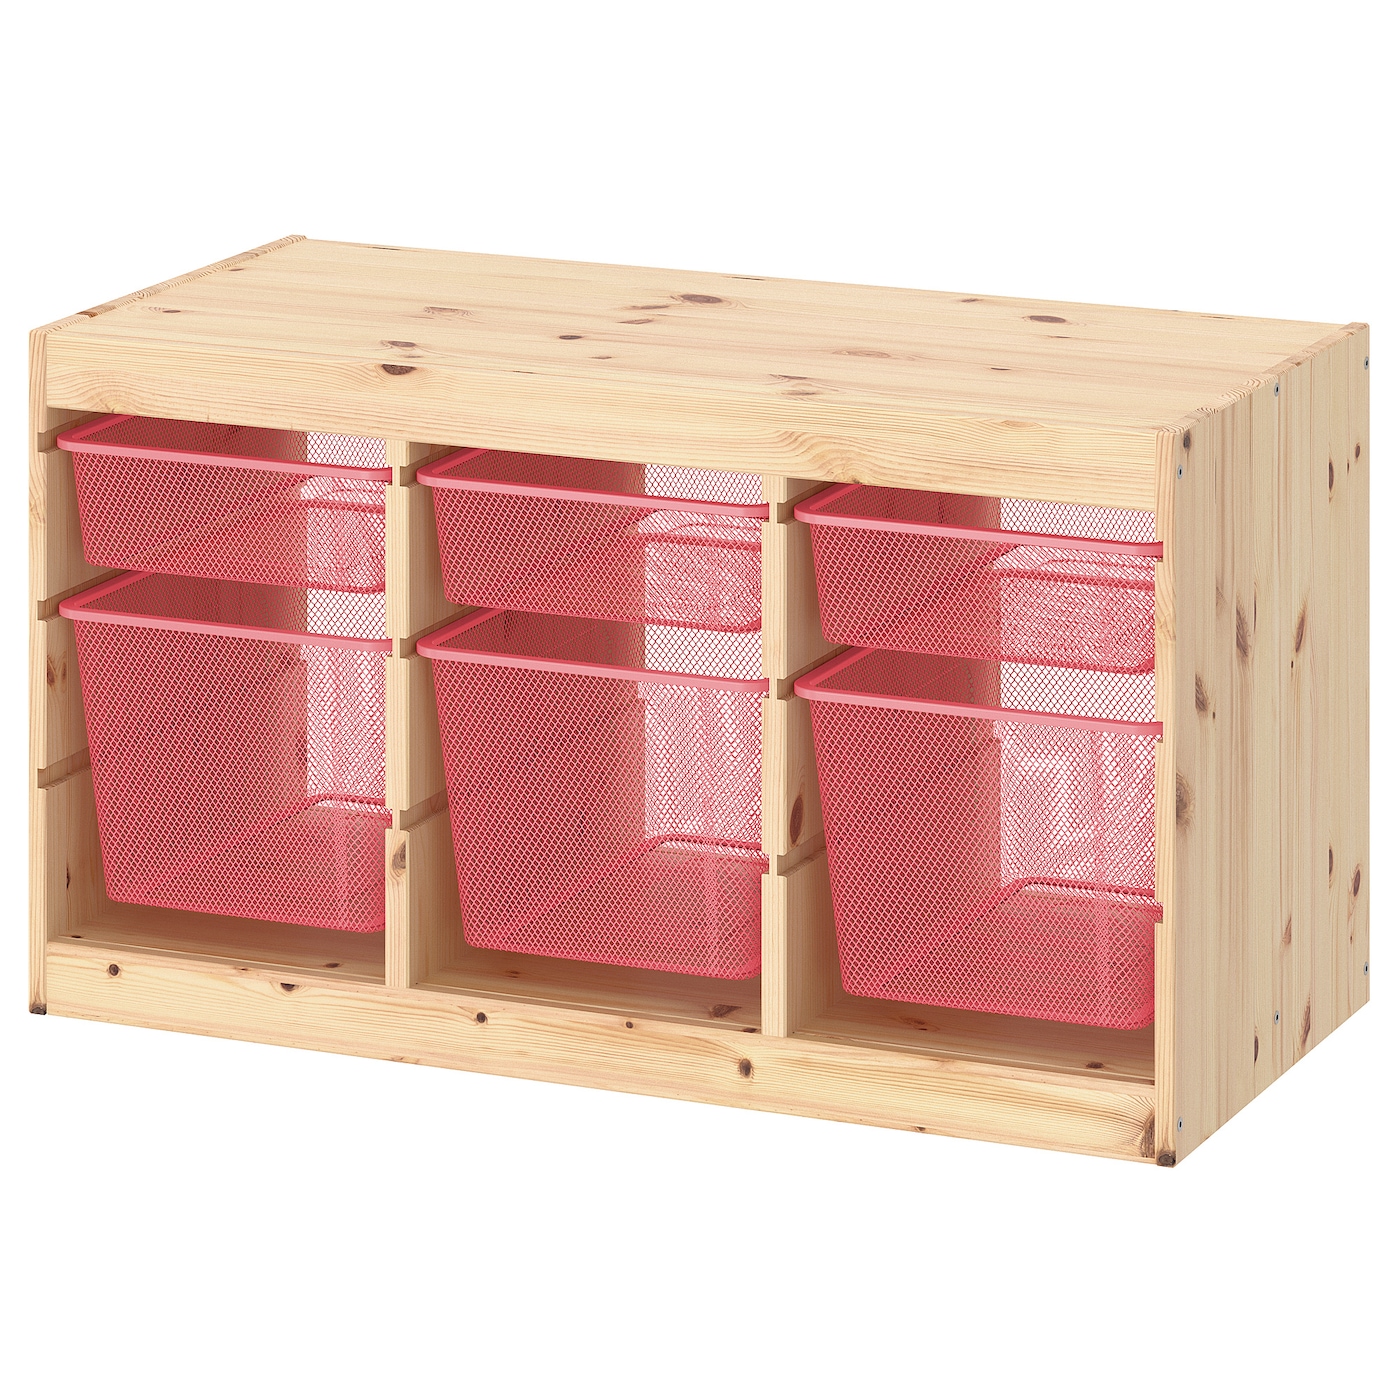 Стеллаж детский - IKEA TROFAST, 93x44x52 см, светло-коричневый/розовый, ИКЕА